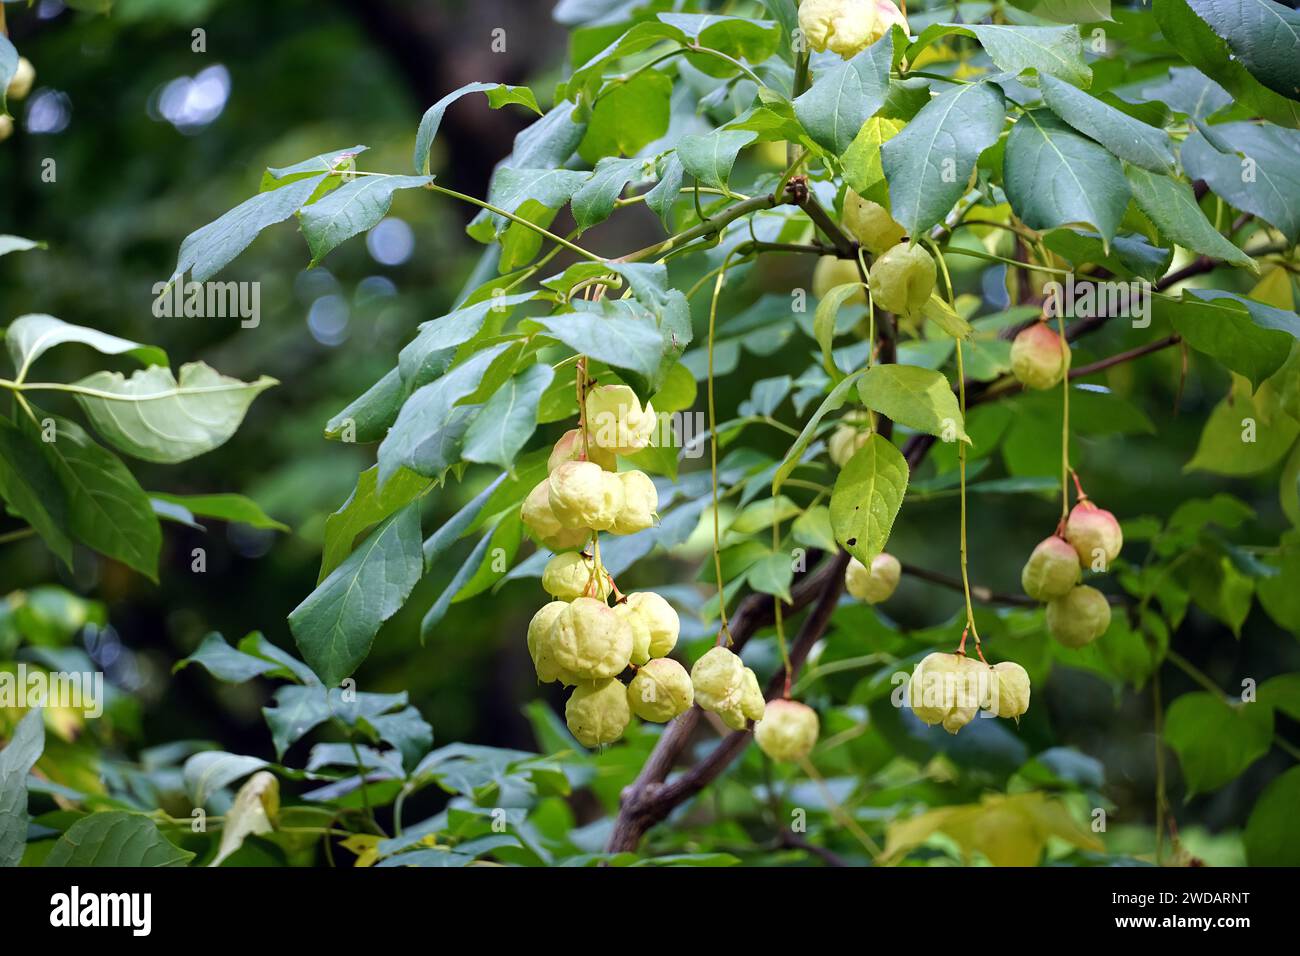 European bladdernut, Gemeine Pimpernuss, Klappernuss, Staphylea pinnata, mogyorós hólyagfa Stock Photo